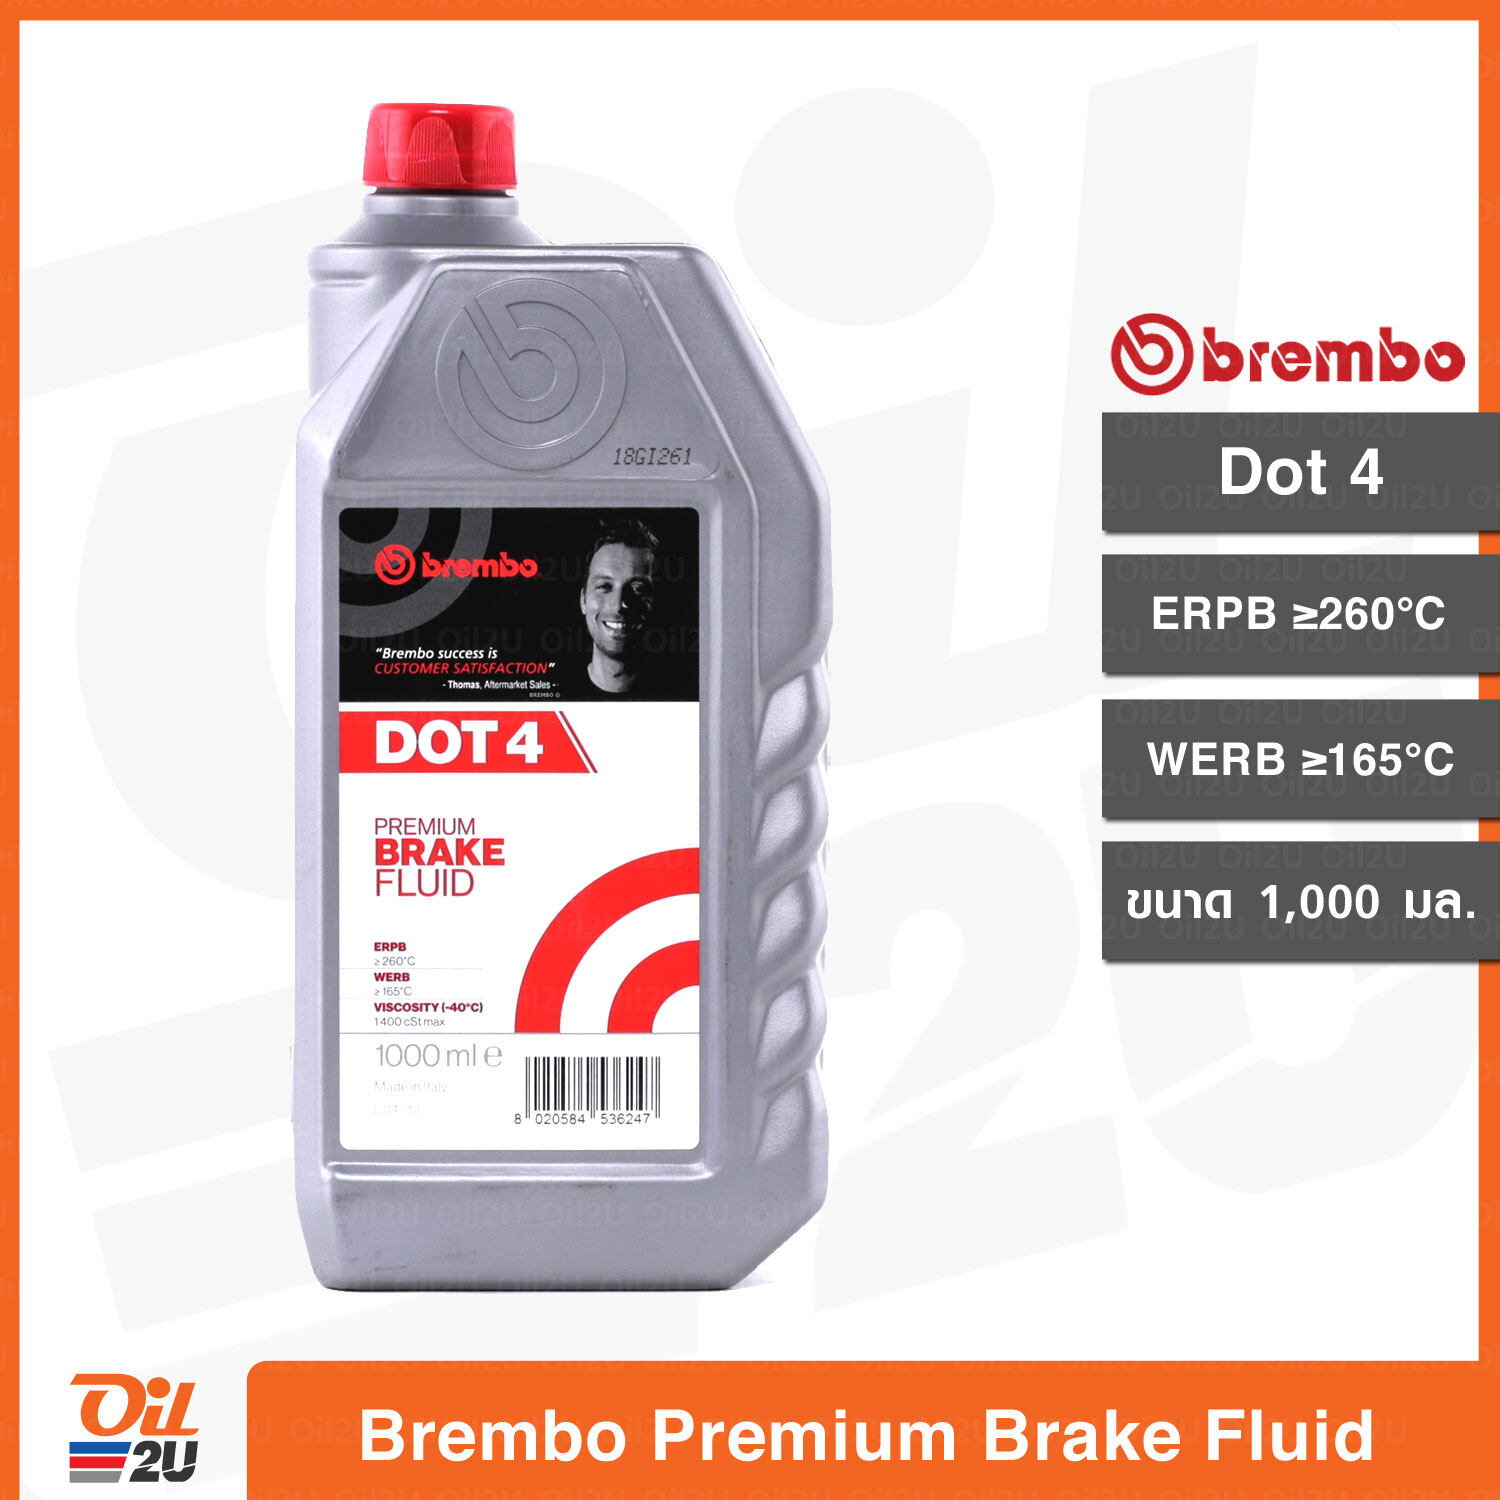 น้ำมันเบรค เบรมโบ้ Brembo Premium Brake Fluid Dot 4 ปริมาณ 1,000 ml. | Oil2U